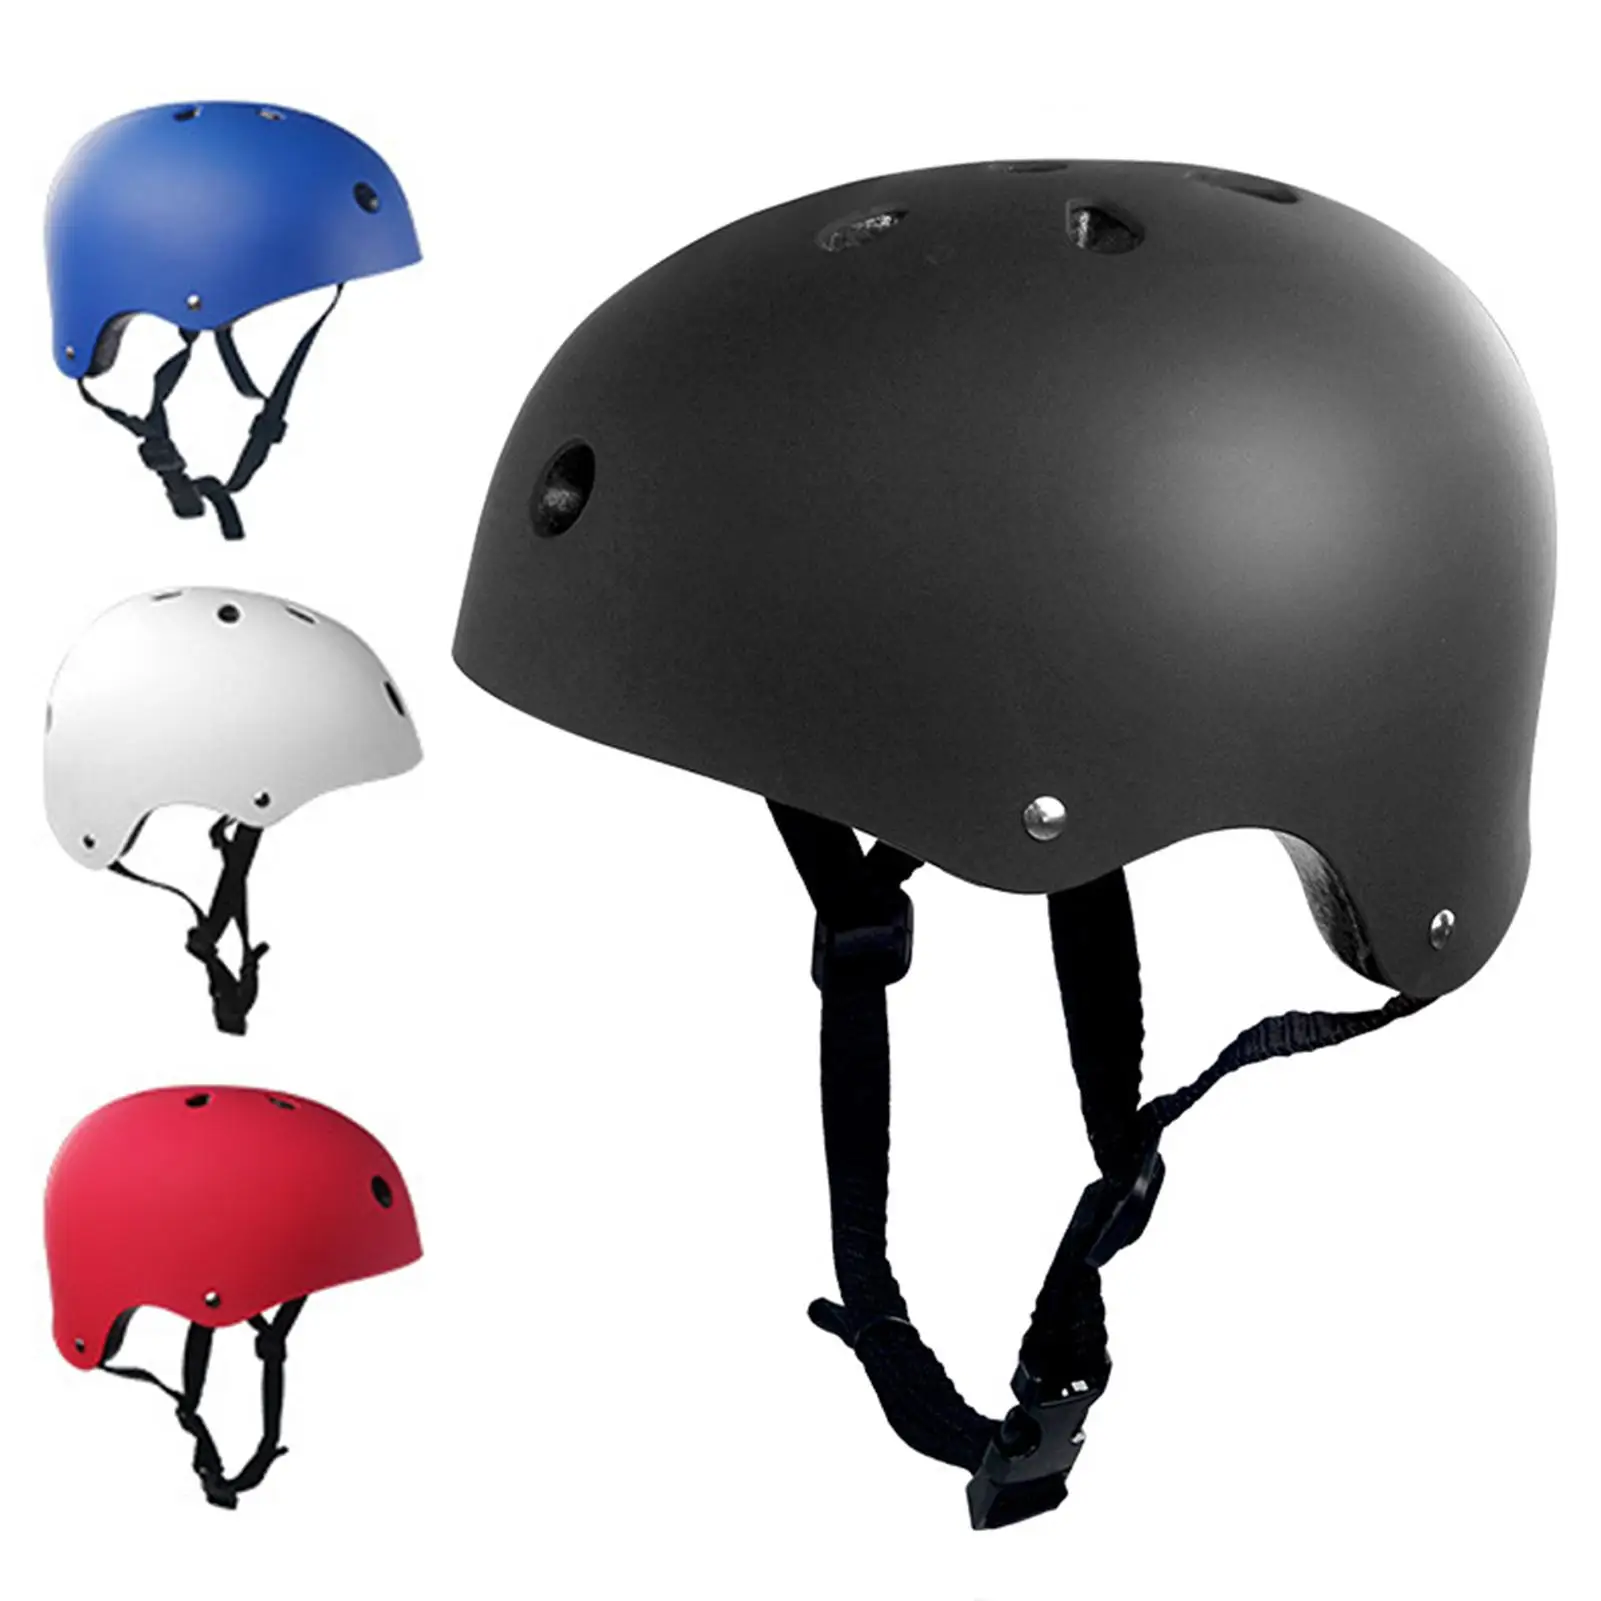 

Уличный ударопрочный шлем для взрослых и детей, вентиляция, для езды на велосипеде, скалолазания, скейтбординга, хип-хоп, роликовых коньков